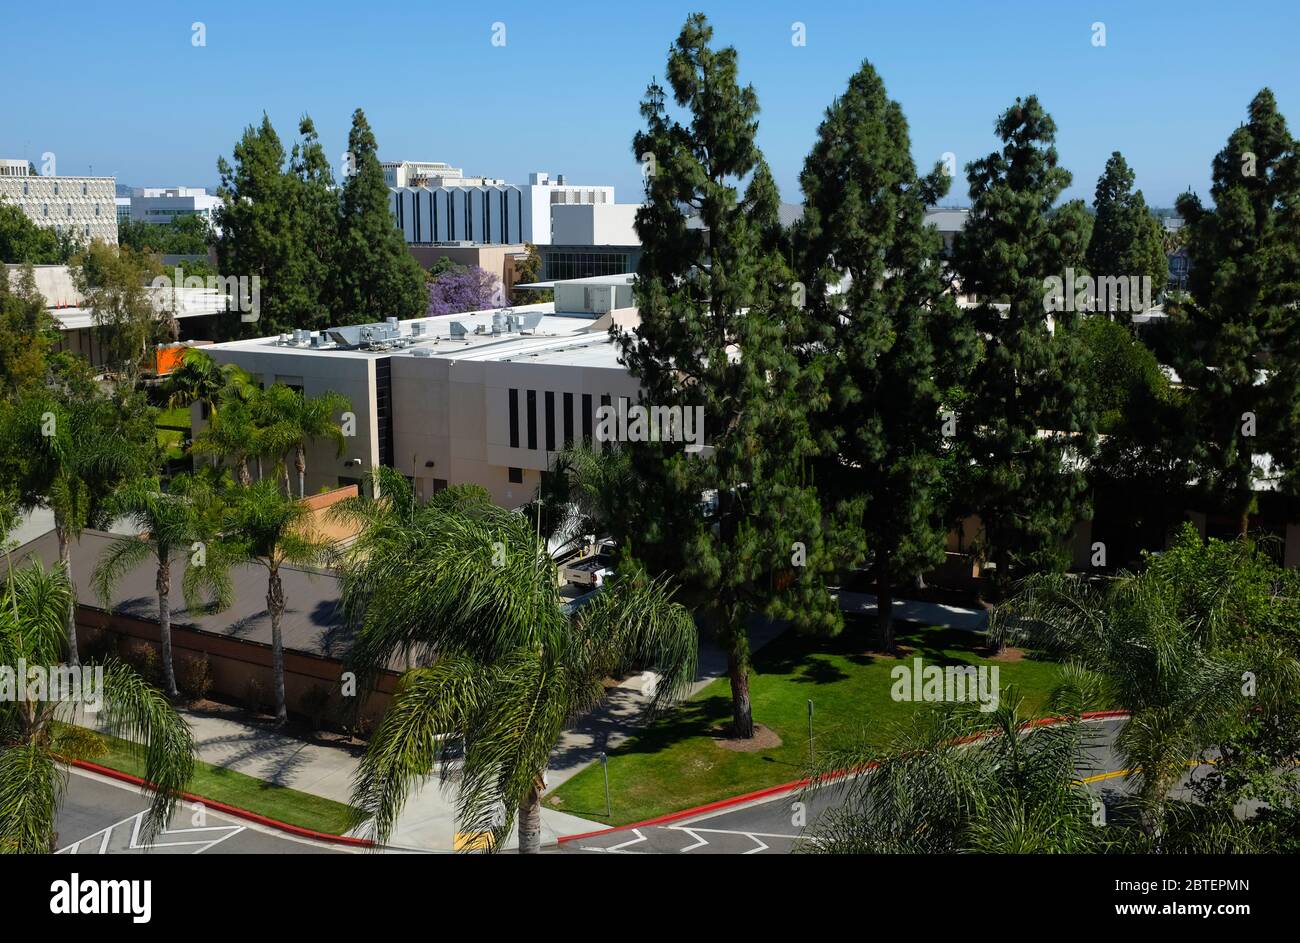 FULLERTON CALIFORNIA - 22 MAI 2020 : la librairie Titan et d'autres bâtiments vus d'une structure de stationnement sur le campus de l'université d'État de Californie Banque D'Images